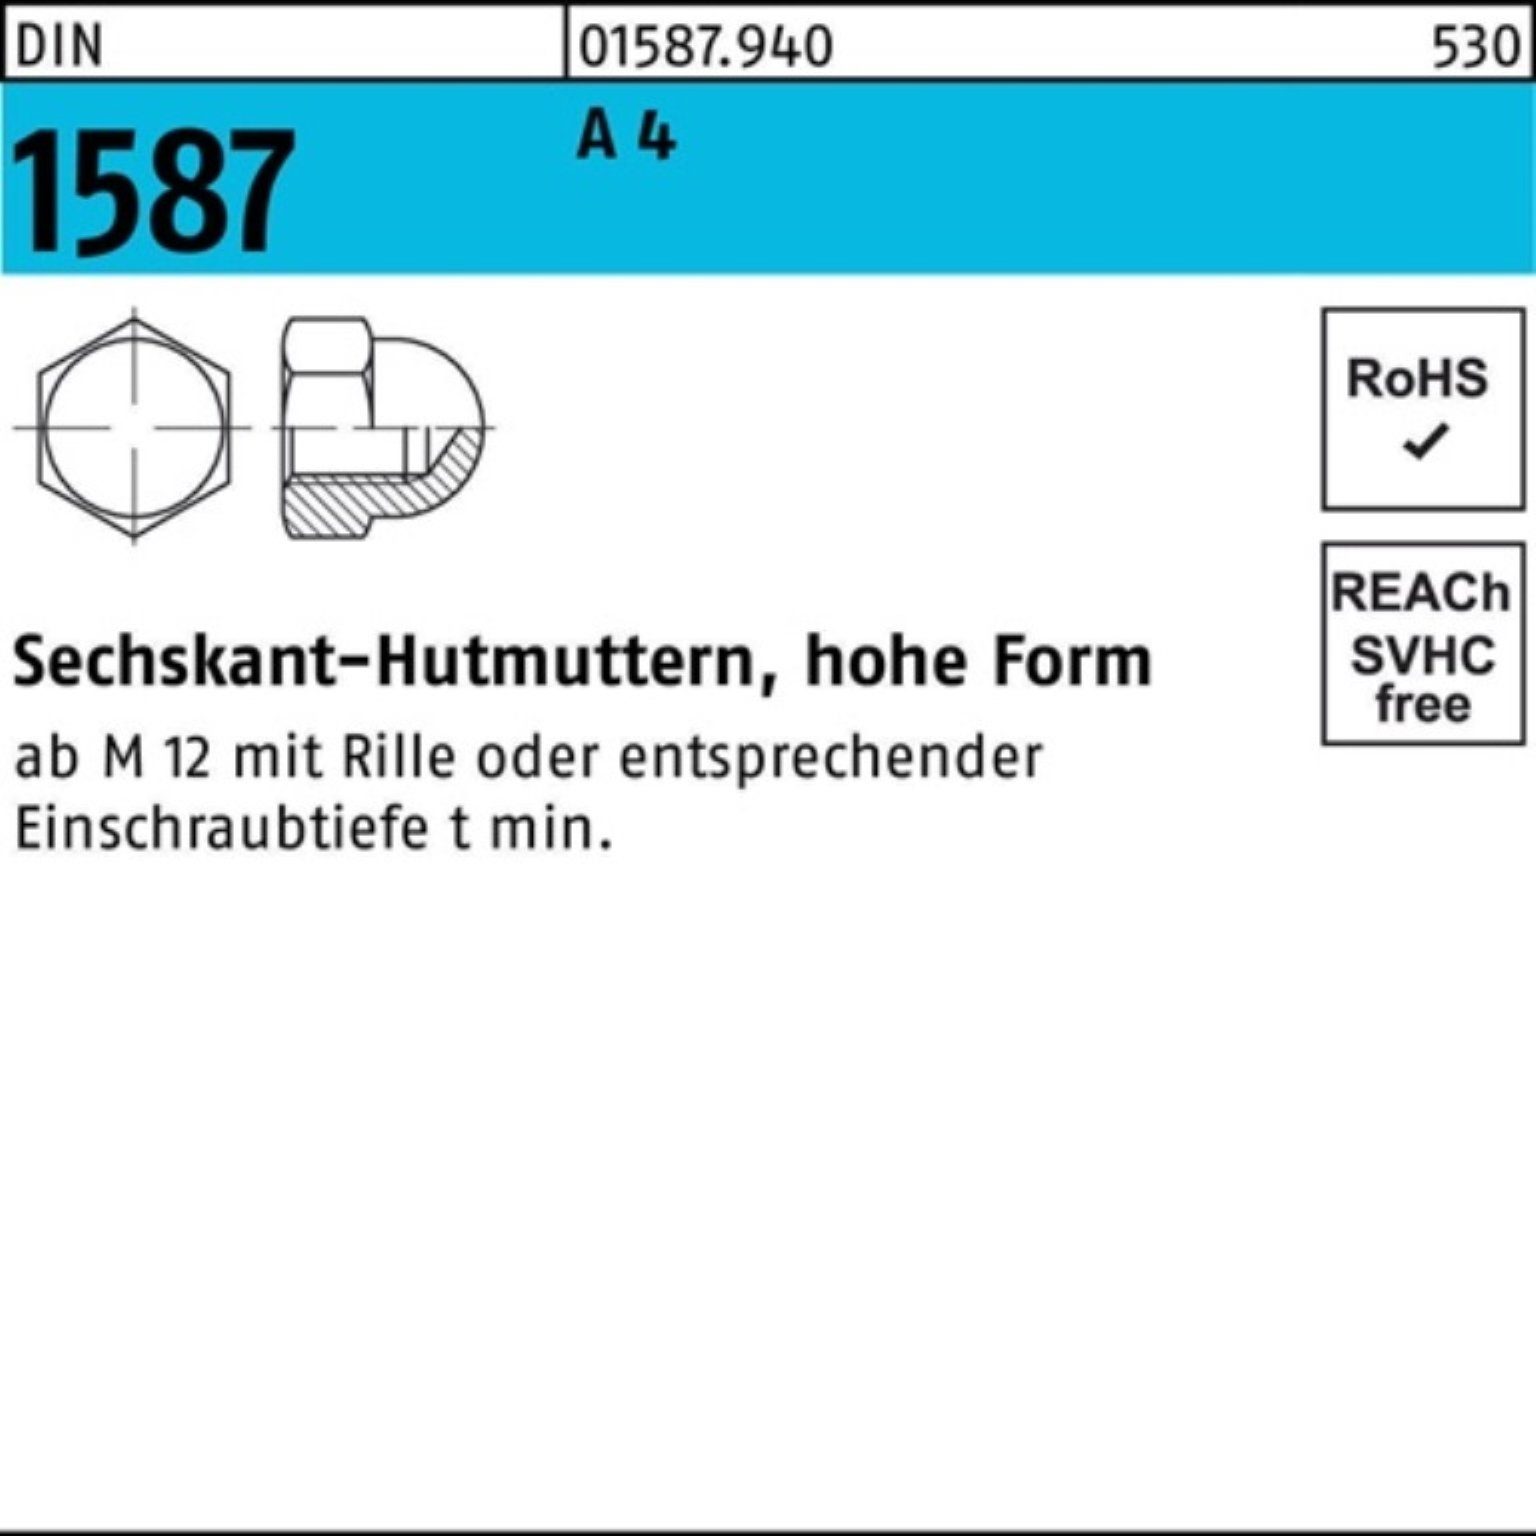 Stück Sechskanthutmutter DIN Pack DIN A 4 Reyher 4 1587 1587 500 M8 A Hutmutter 500er